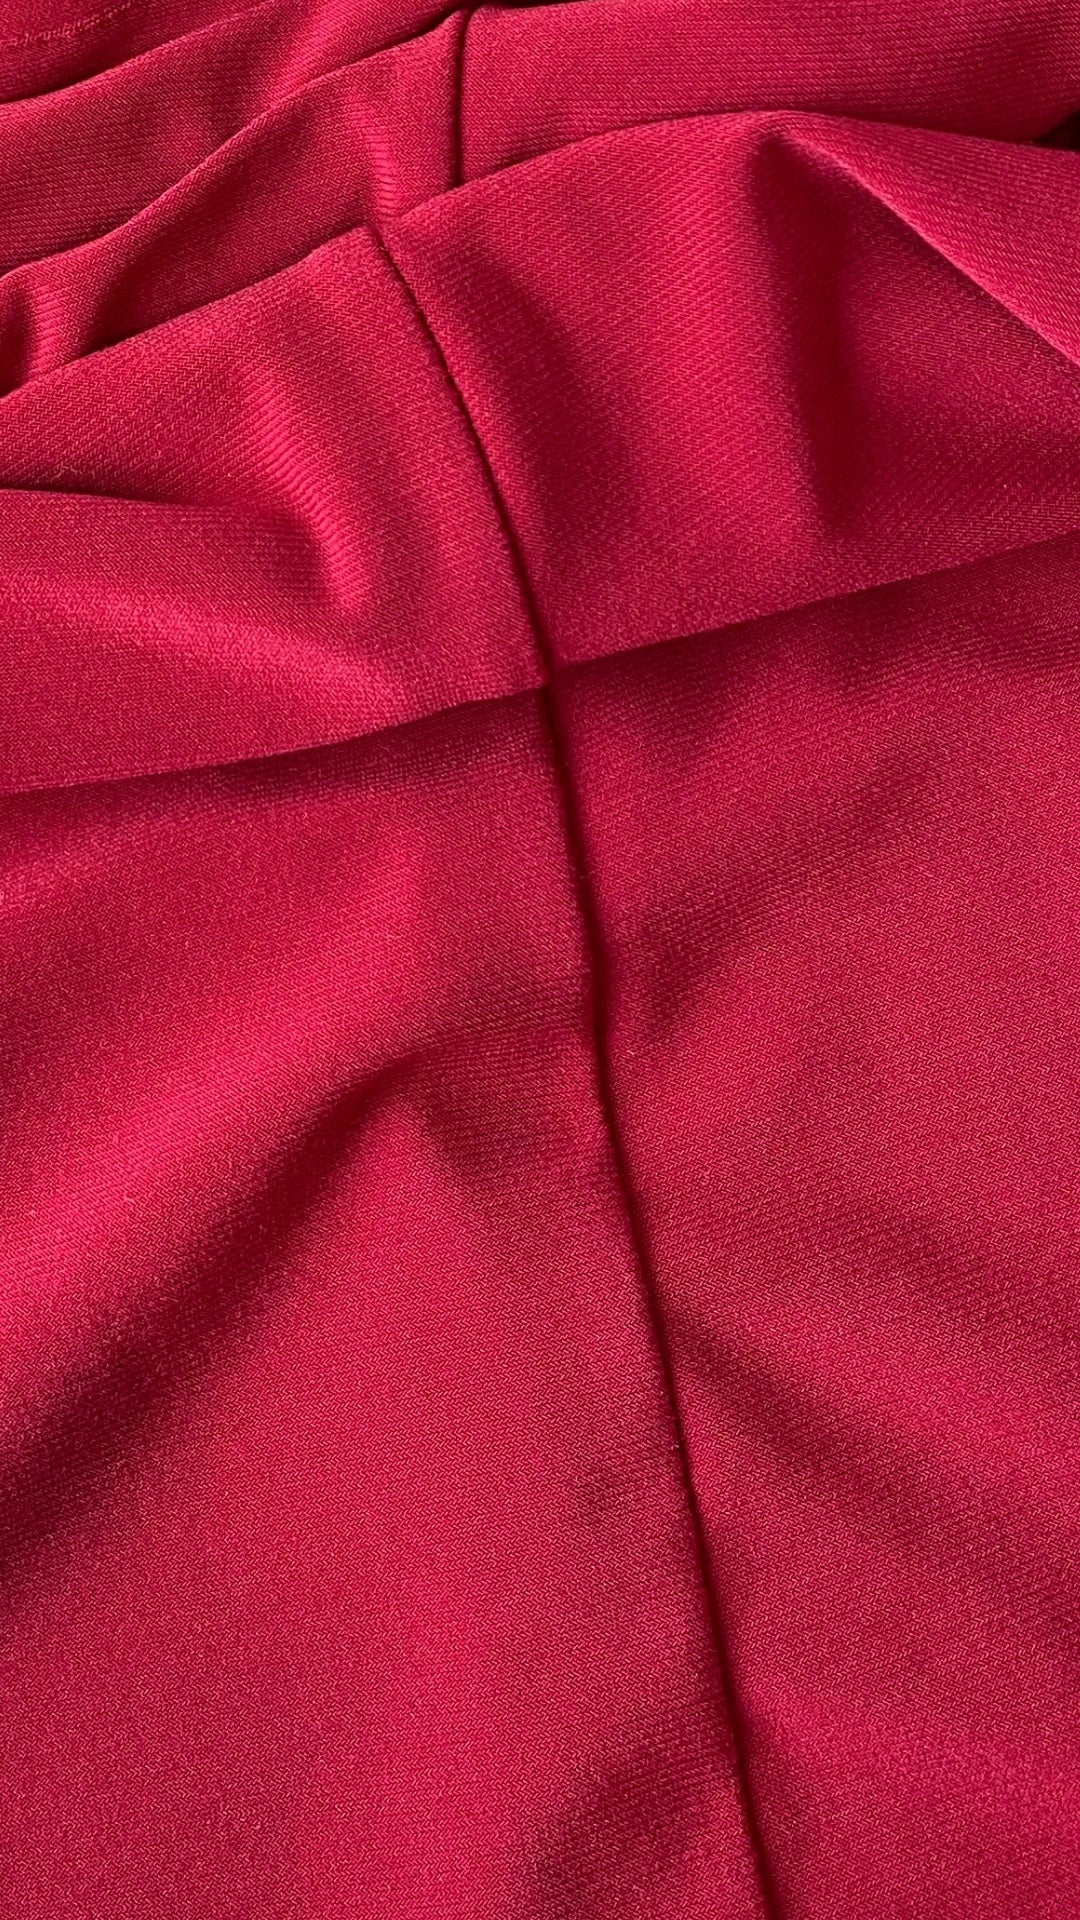 Robe cintrée rouge Isabelle Elie, taille large (m/l). Vue de près du tissu.